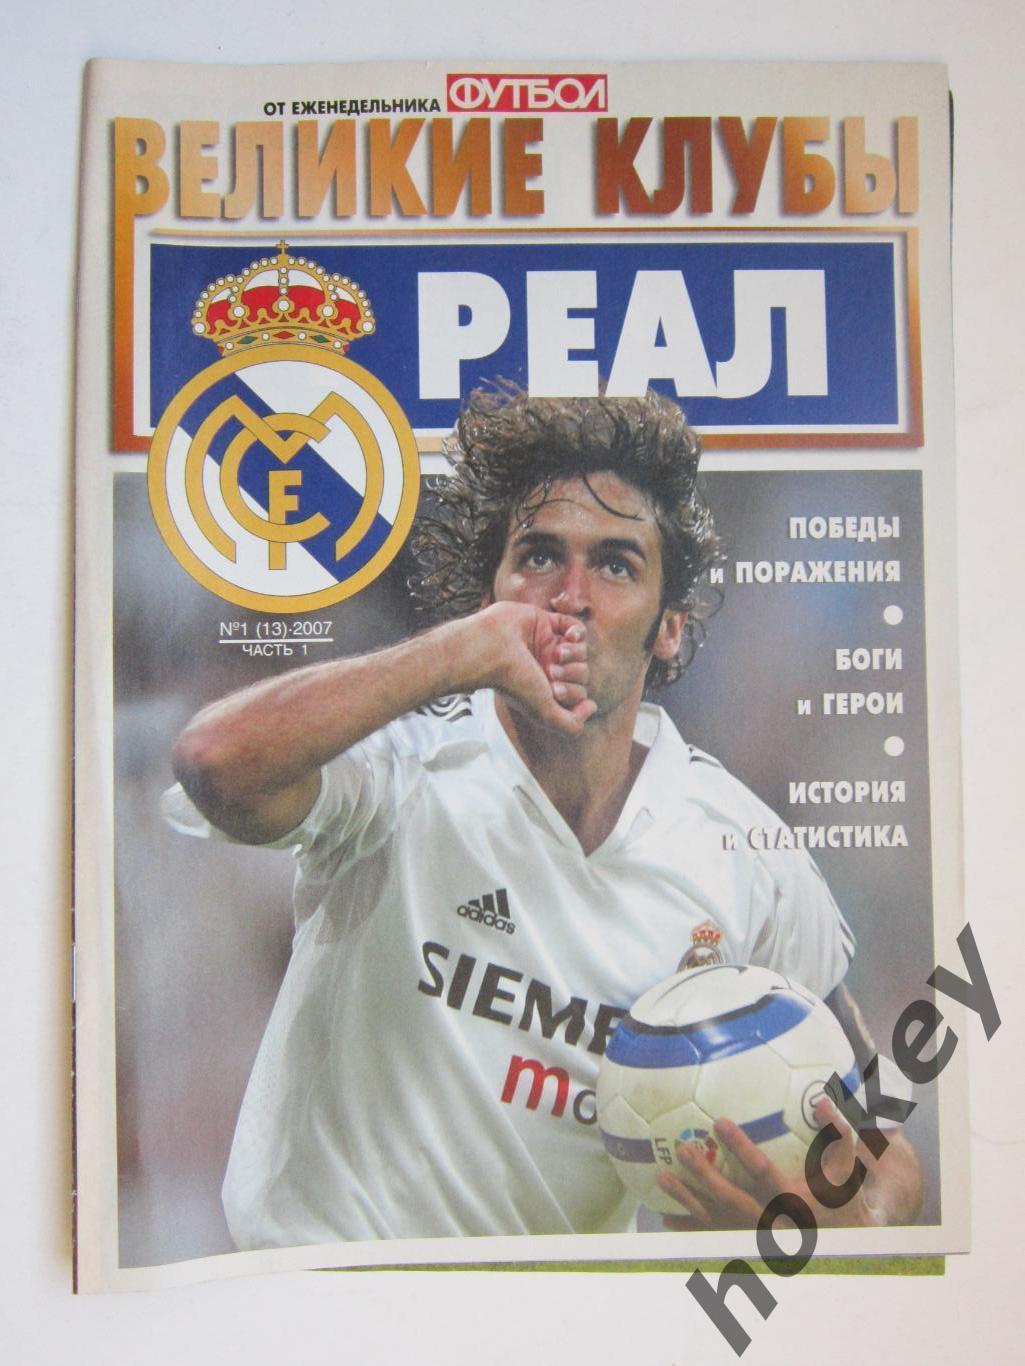 Великие клубы. Реал. Еженедельник Футбол. 2007 год. № 1 (13). Часть 1